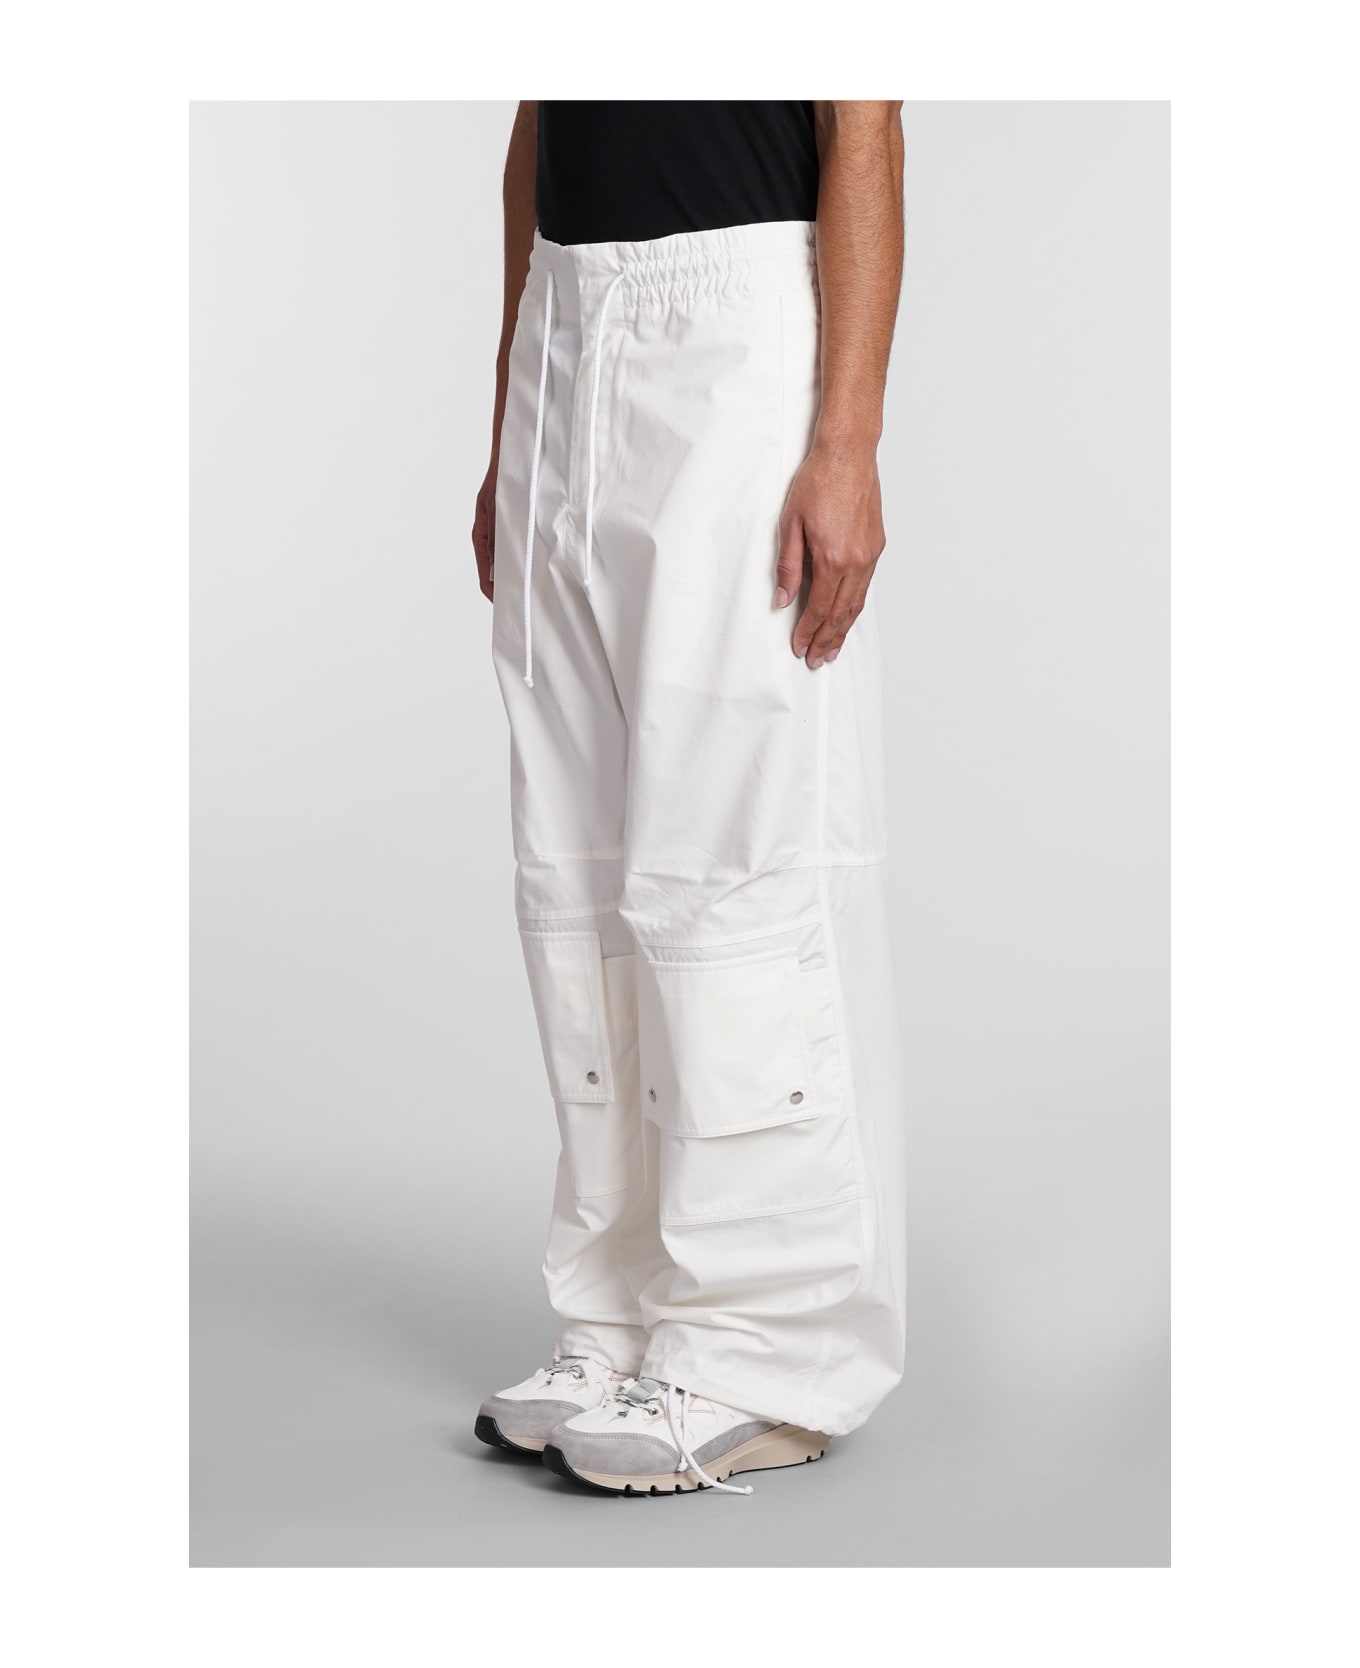 OAMC Pants In White Cotton - white